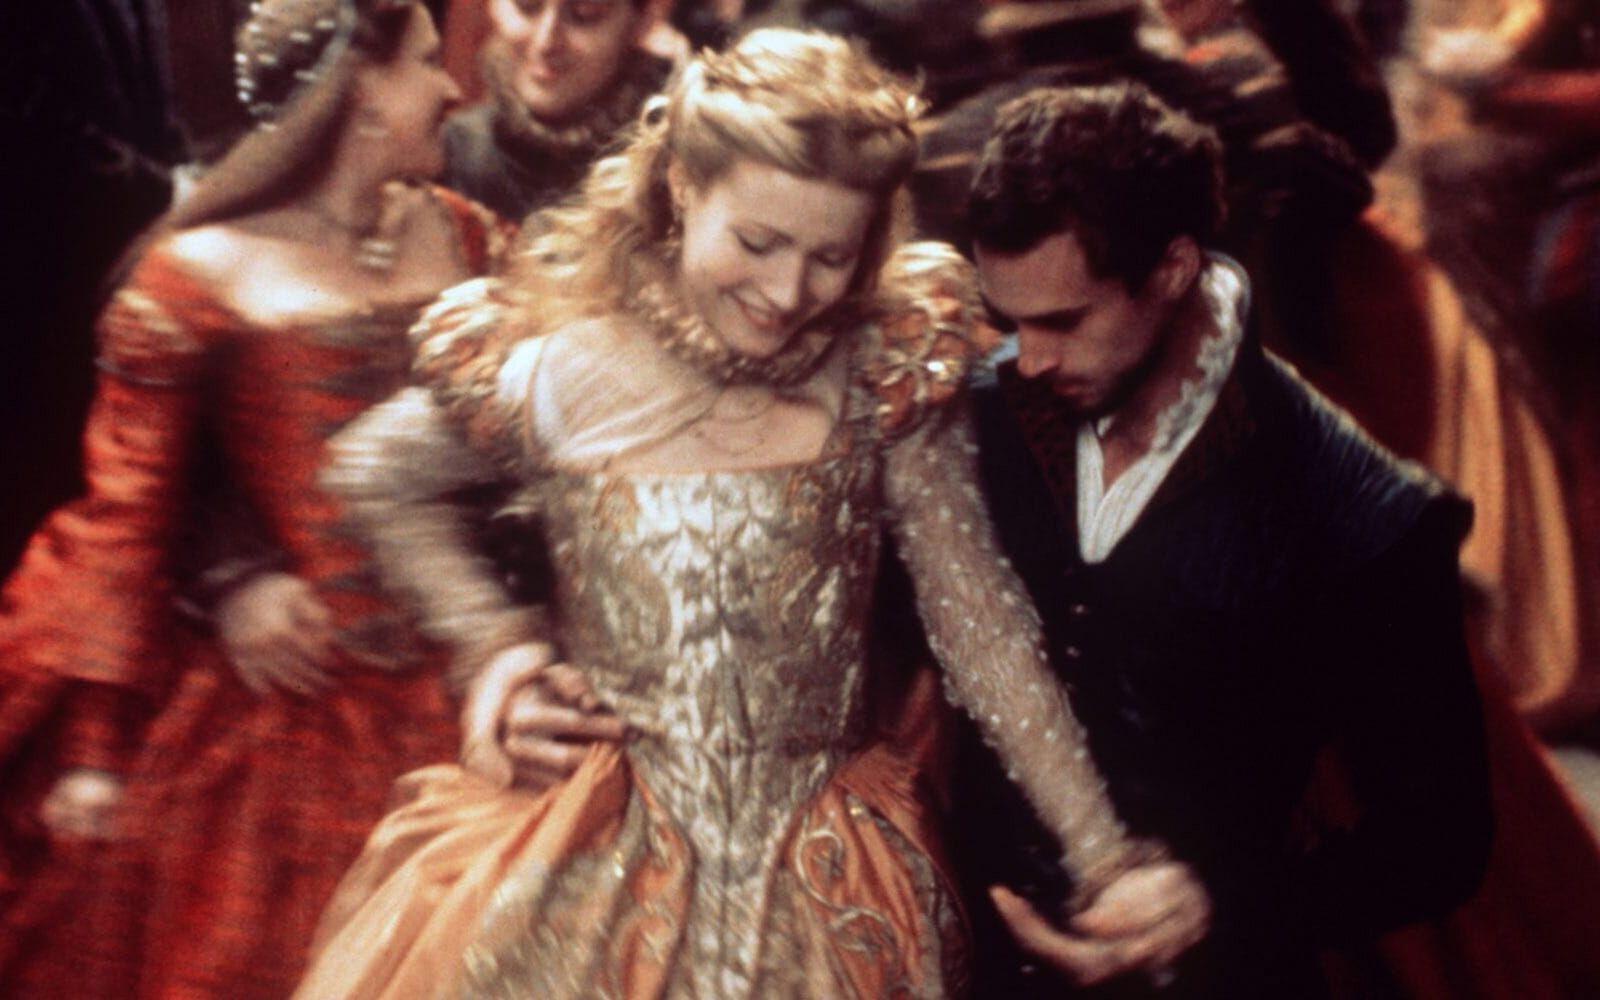 ”You will never age for me, nor fade, nor die.” - Will (Joseph Fiennes) till Viola (Gwyneth Paltrow) i ”Shakespeare in love” från 1998. 7 Oscars blev det för succéfilmen. Den manliga huvudrollsinnehavaren Joseph Fiennes gick dock lottlös från galan, men den laddade kärleksrepliken kan ingen ta ifrån honom. Foto: TT